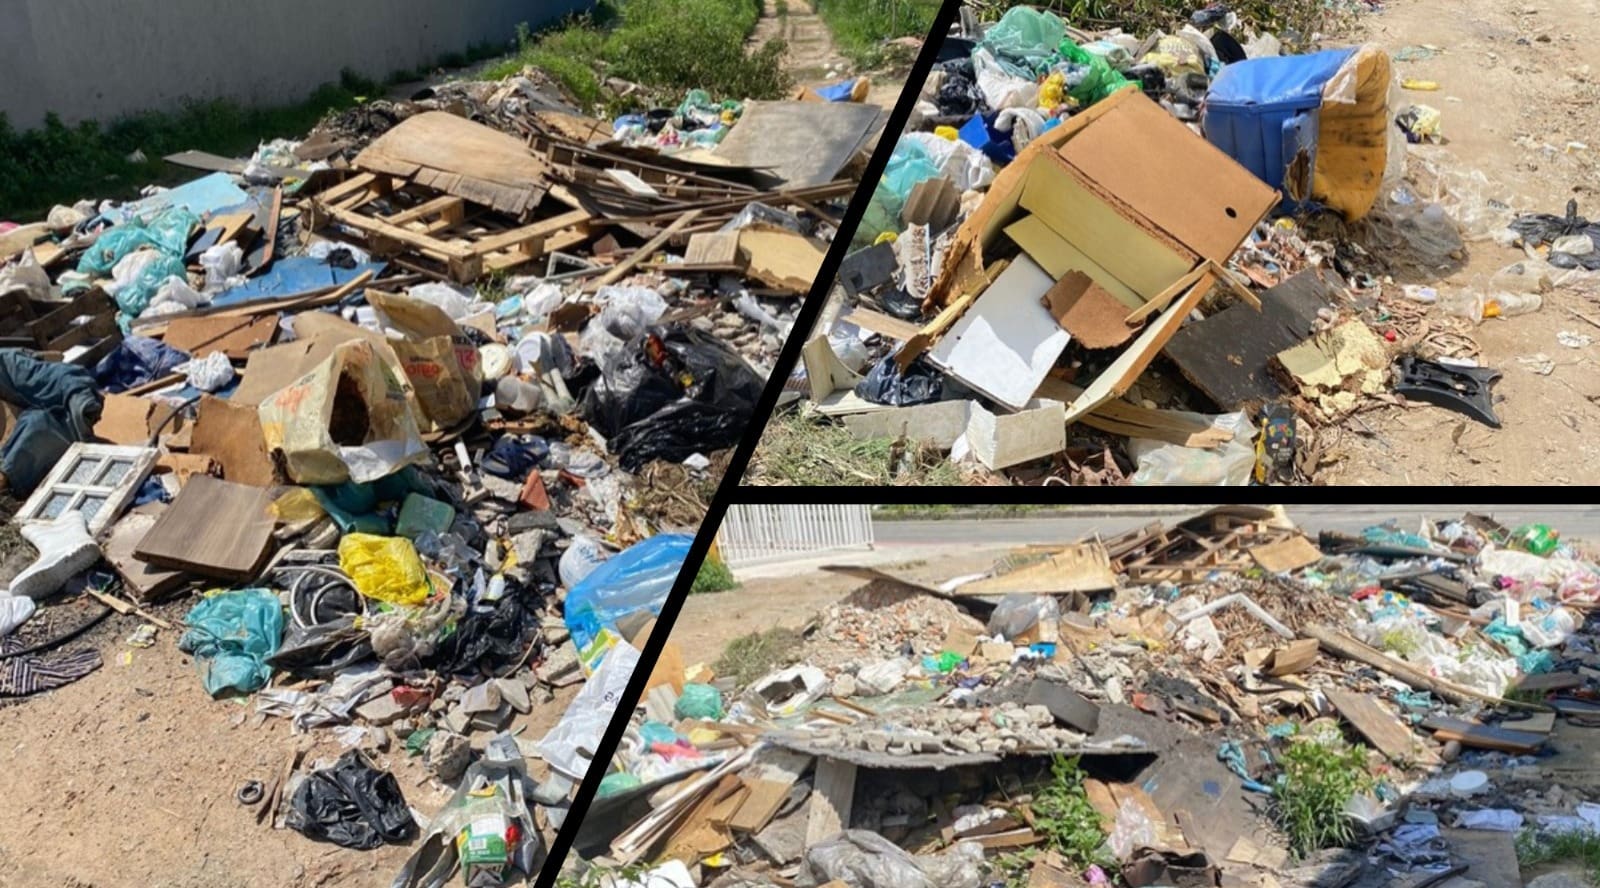 Imagens do entulho e lixo acumulado na rua Araponga em Novo Horizonte